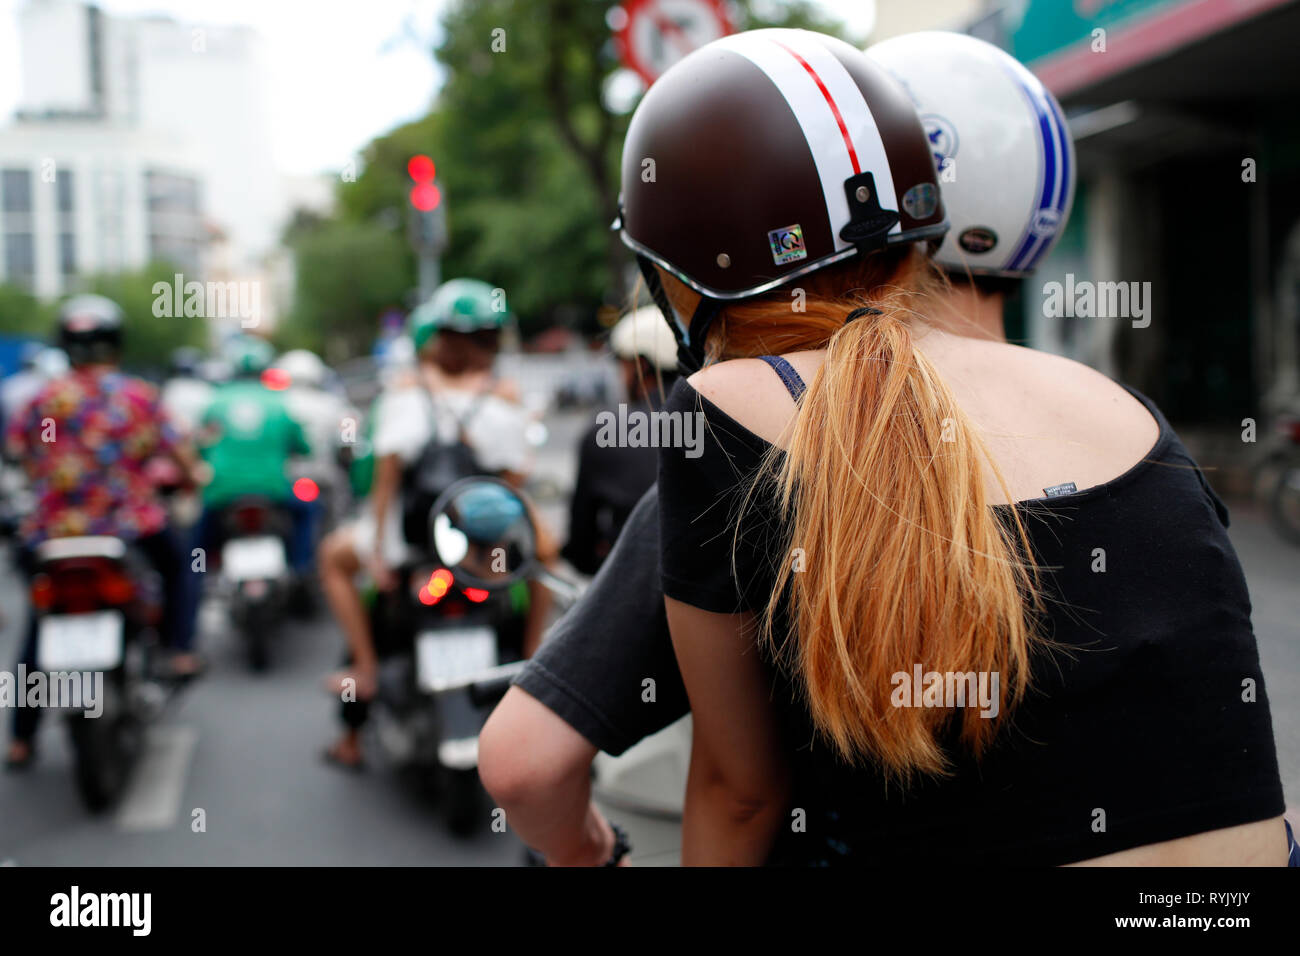 La circulation intense. Les motos dans la rue. Ho Chi Minh Ville. Le Vietnam. Banque D'Images